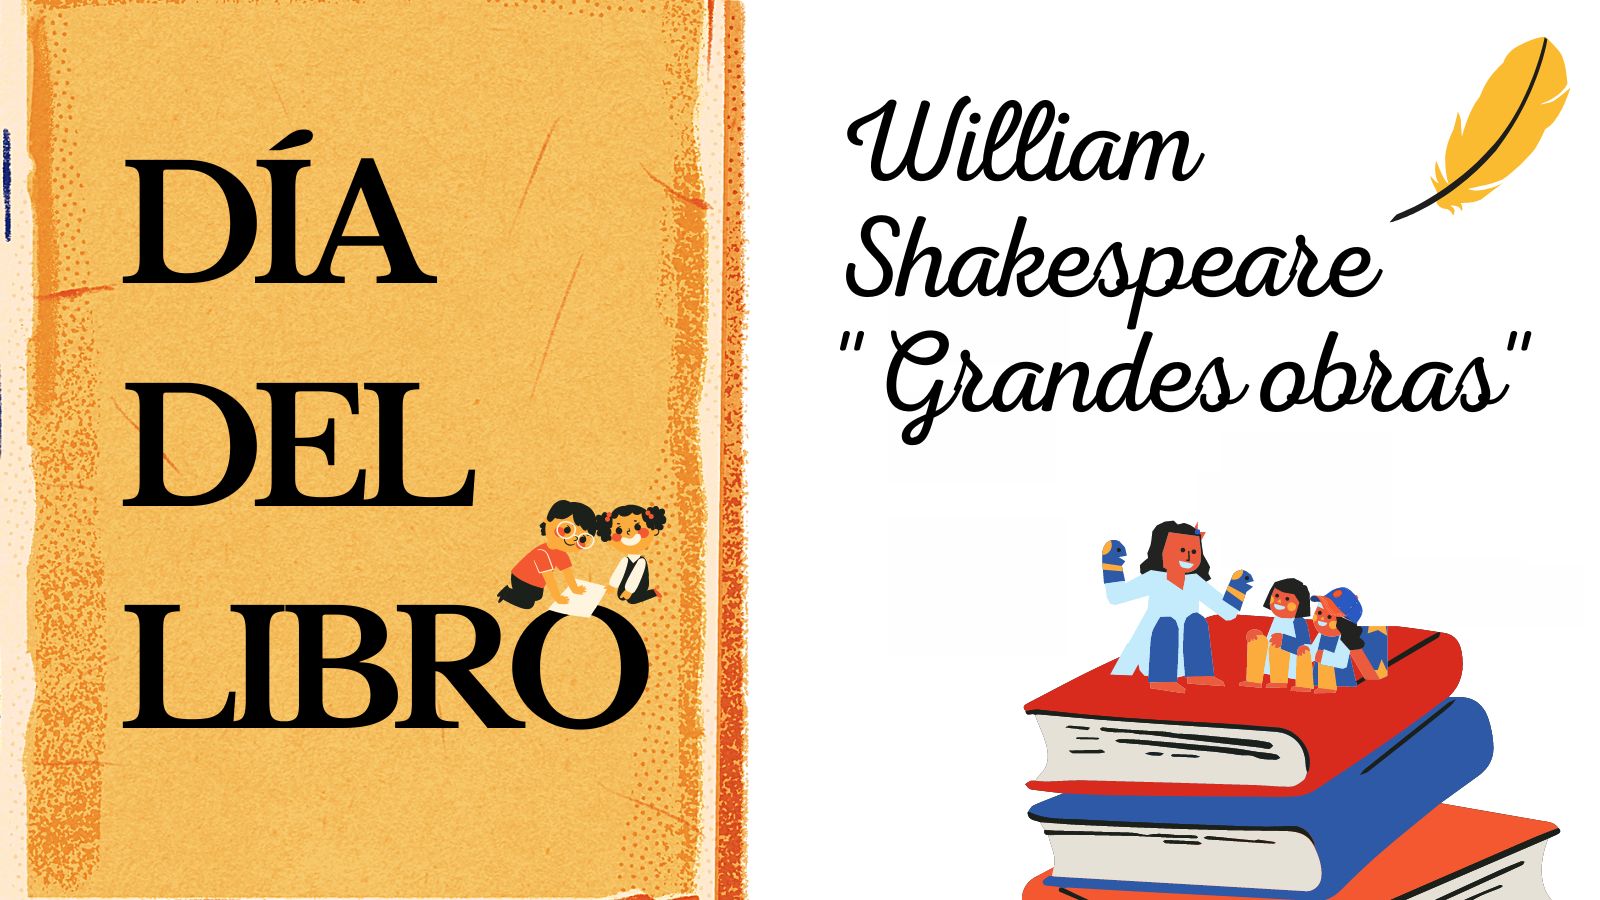 Día del Libro - William Shakespeare "Grandes obras"